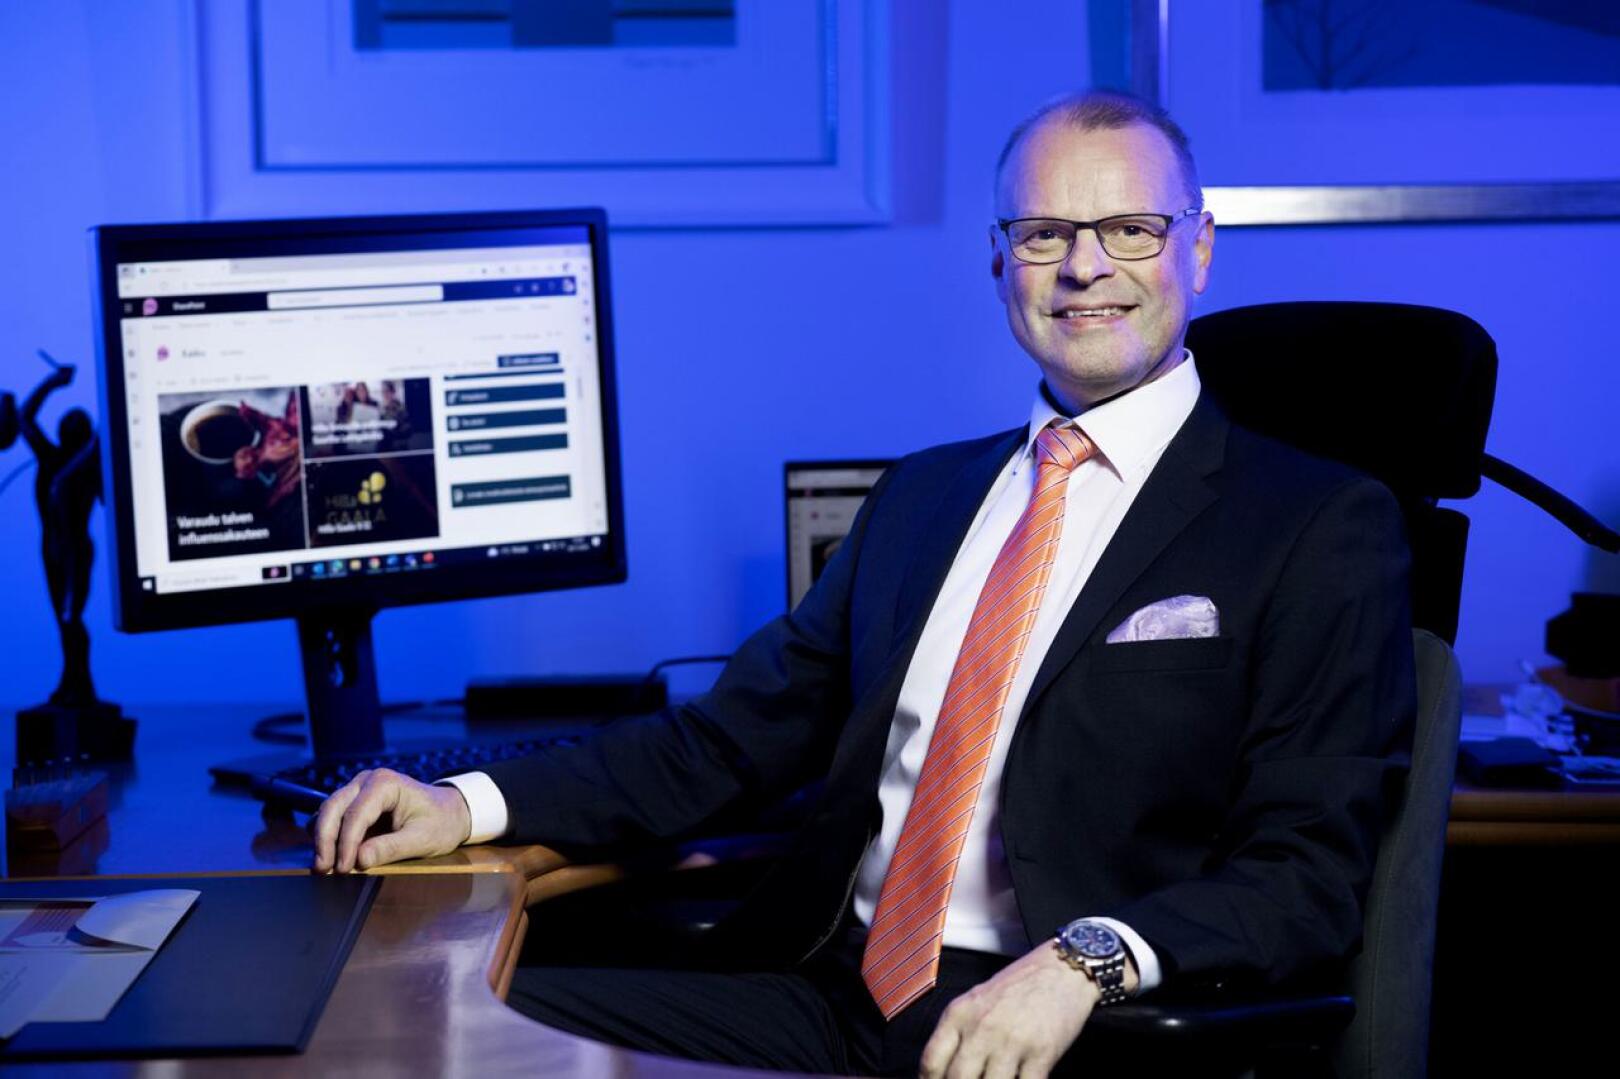 Hilla Groupin toimitusjohtaja Mikko Luoma kehottaa lukijoita "entistä enemmän digitaalisten julkaisujen kuluttamiseen".